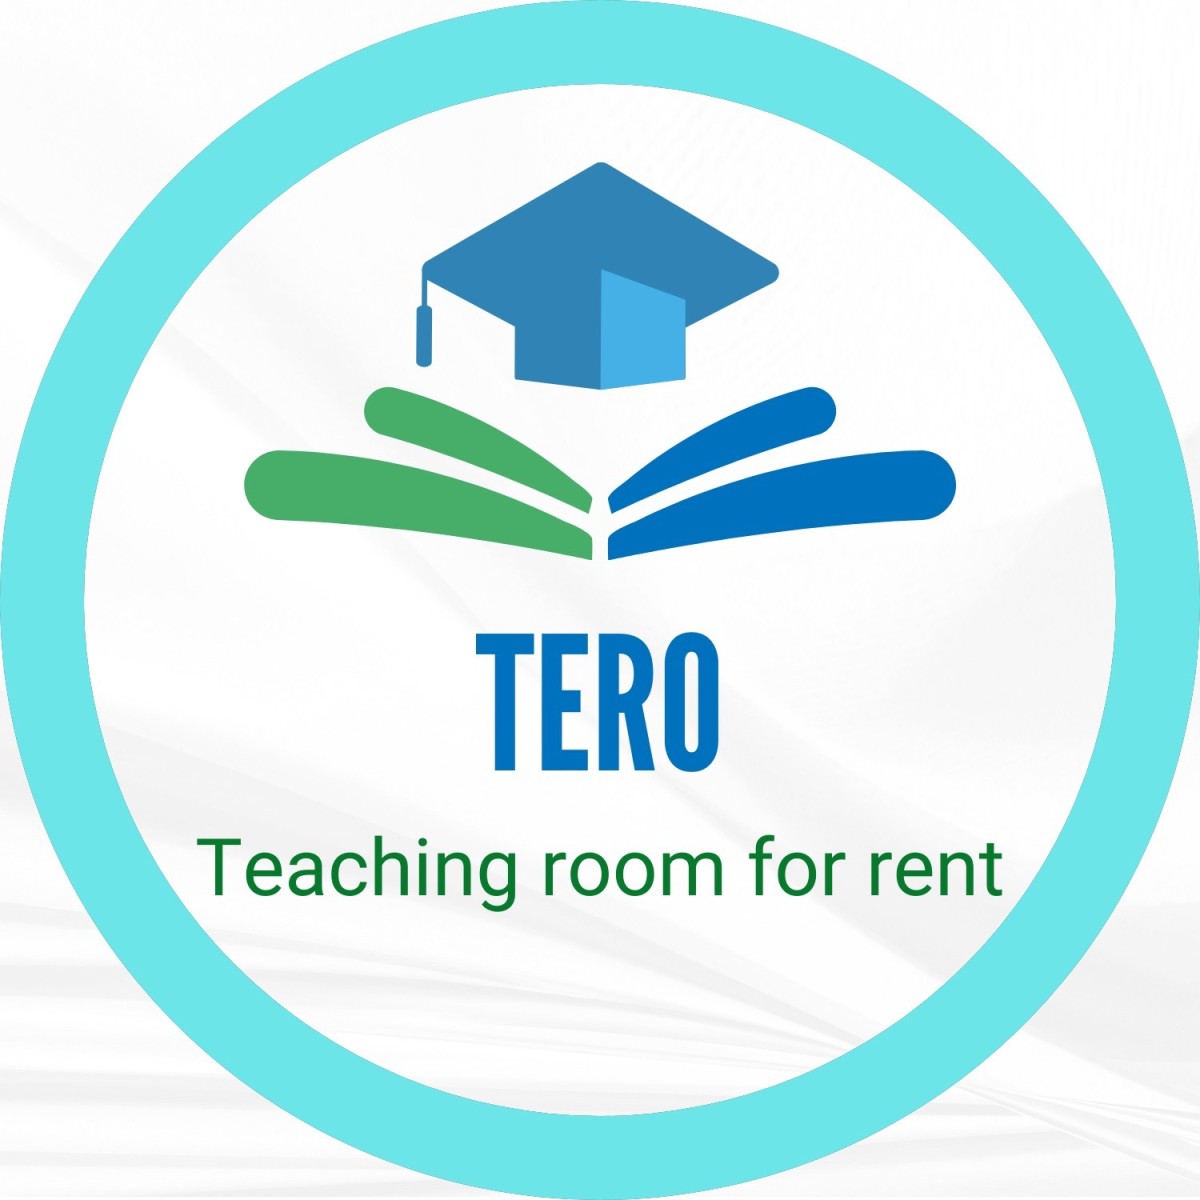 Cho thuê phòng giáo viên dạy học Quận 9, hội thảo, nhóm CLB - Teaching Room for rent (TERO)